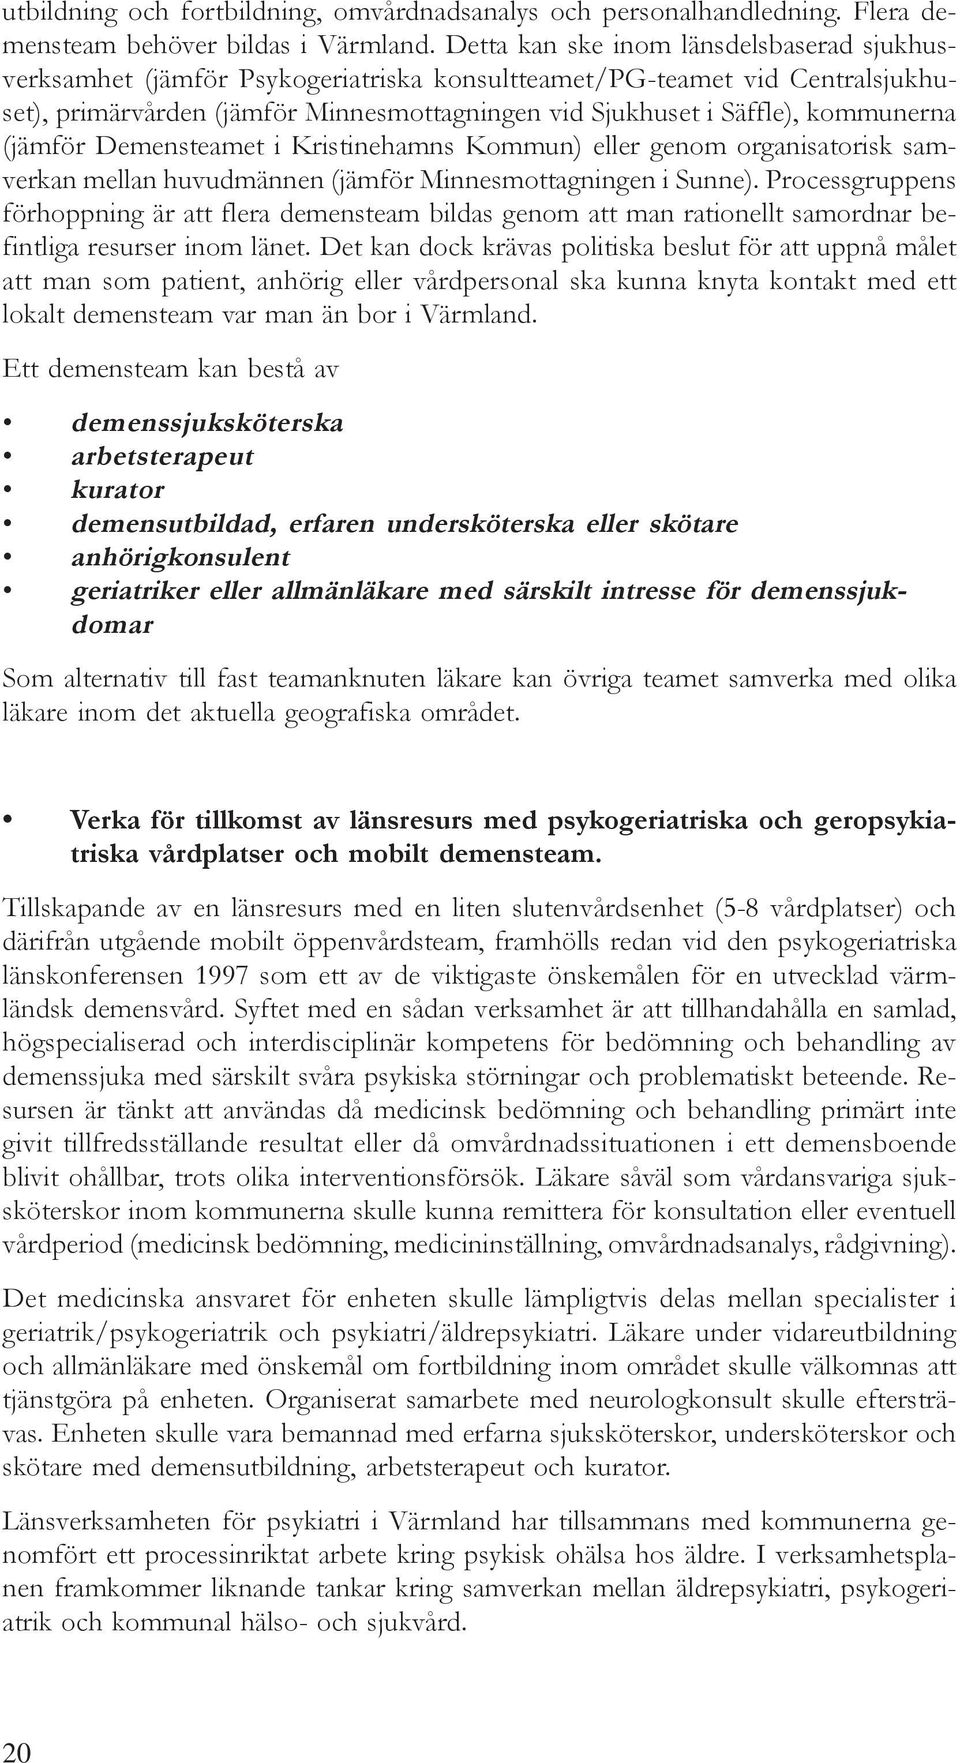 kommunerna (jämför Demensteamet i Kristinehamns Kommun) eller genom organisatorisk samverkan mellan huvudmännen (jämför Minnesmottagningen i Sunne).